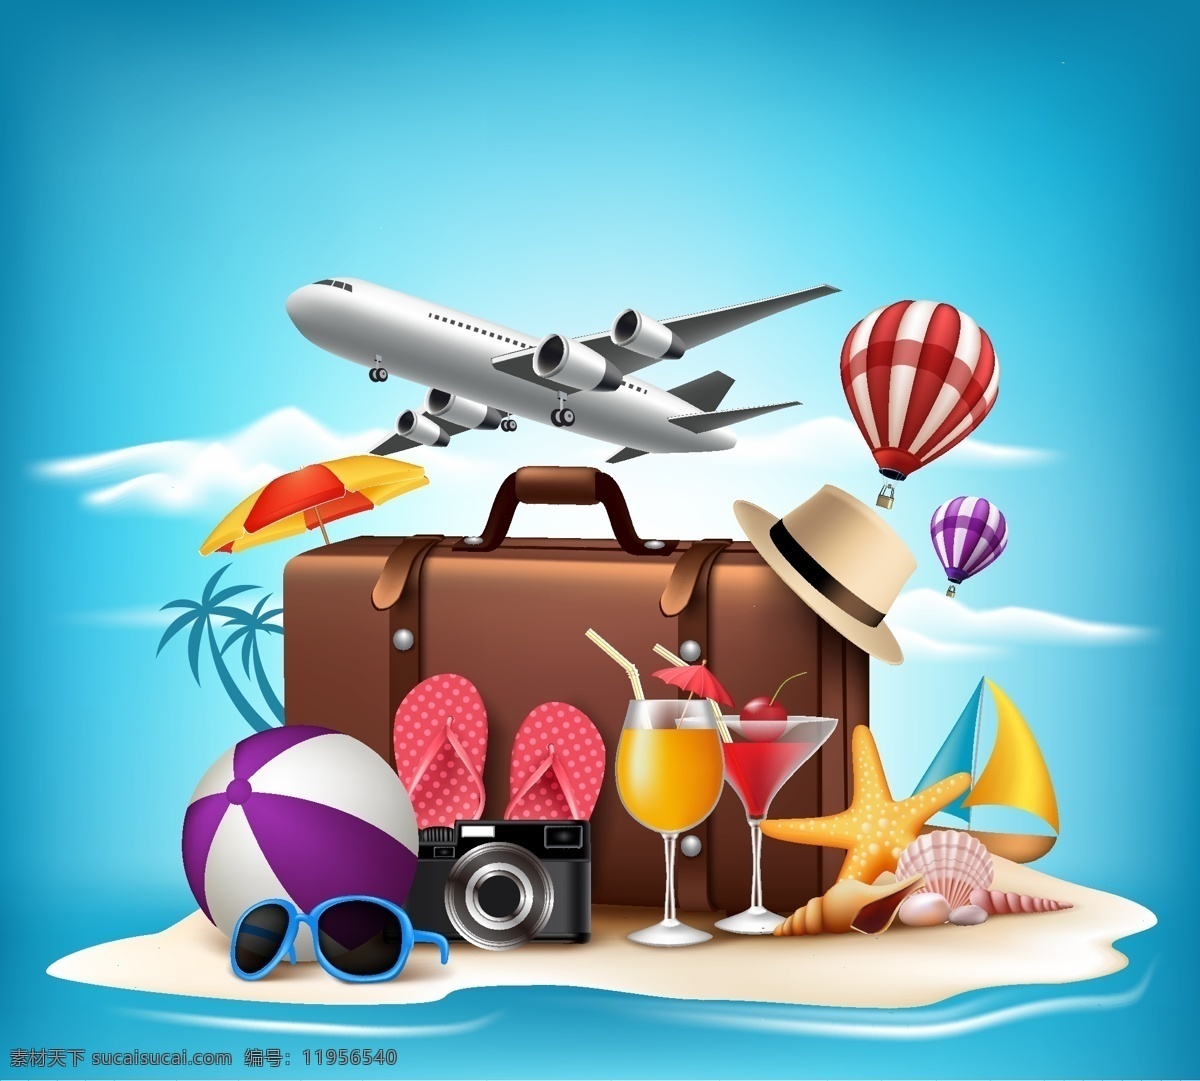 时尚 夏天 旅行 用品 静物 大海 度假 飞机 旅行箱 帽子 热气球 沙滩 相机